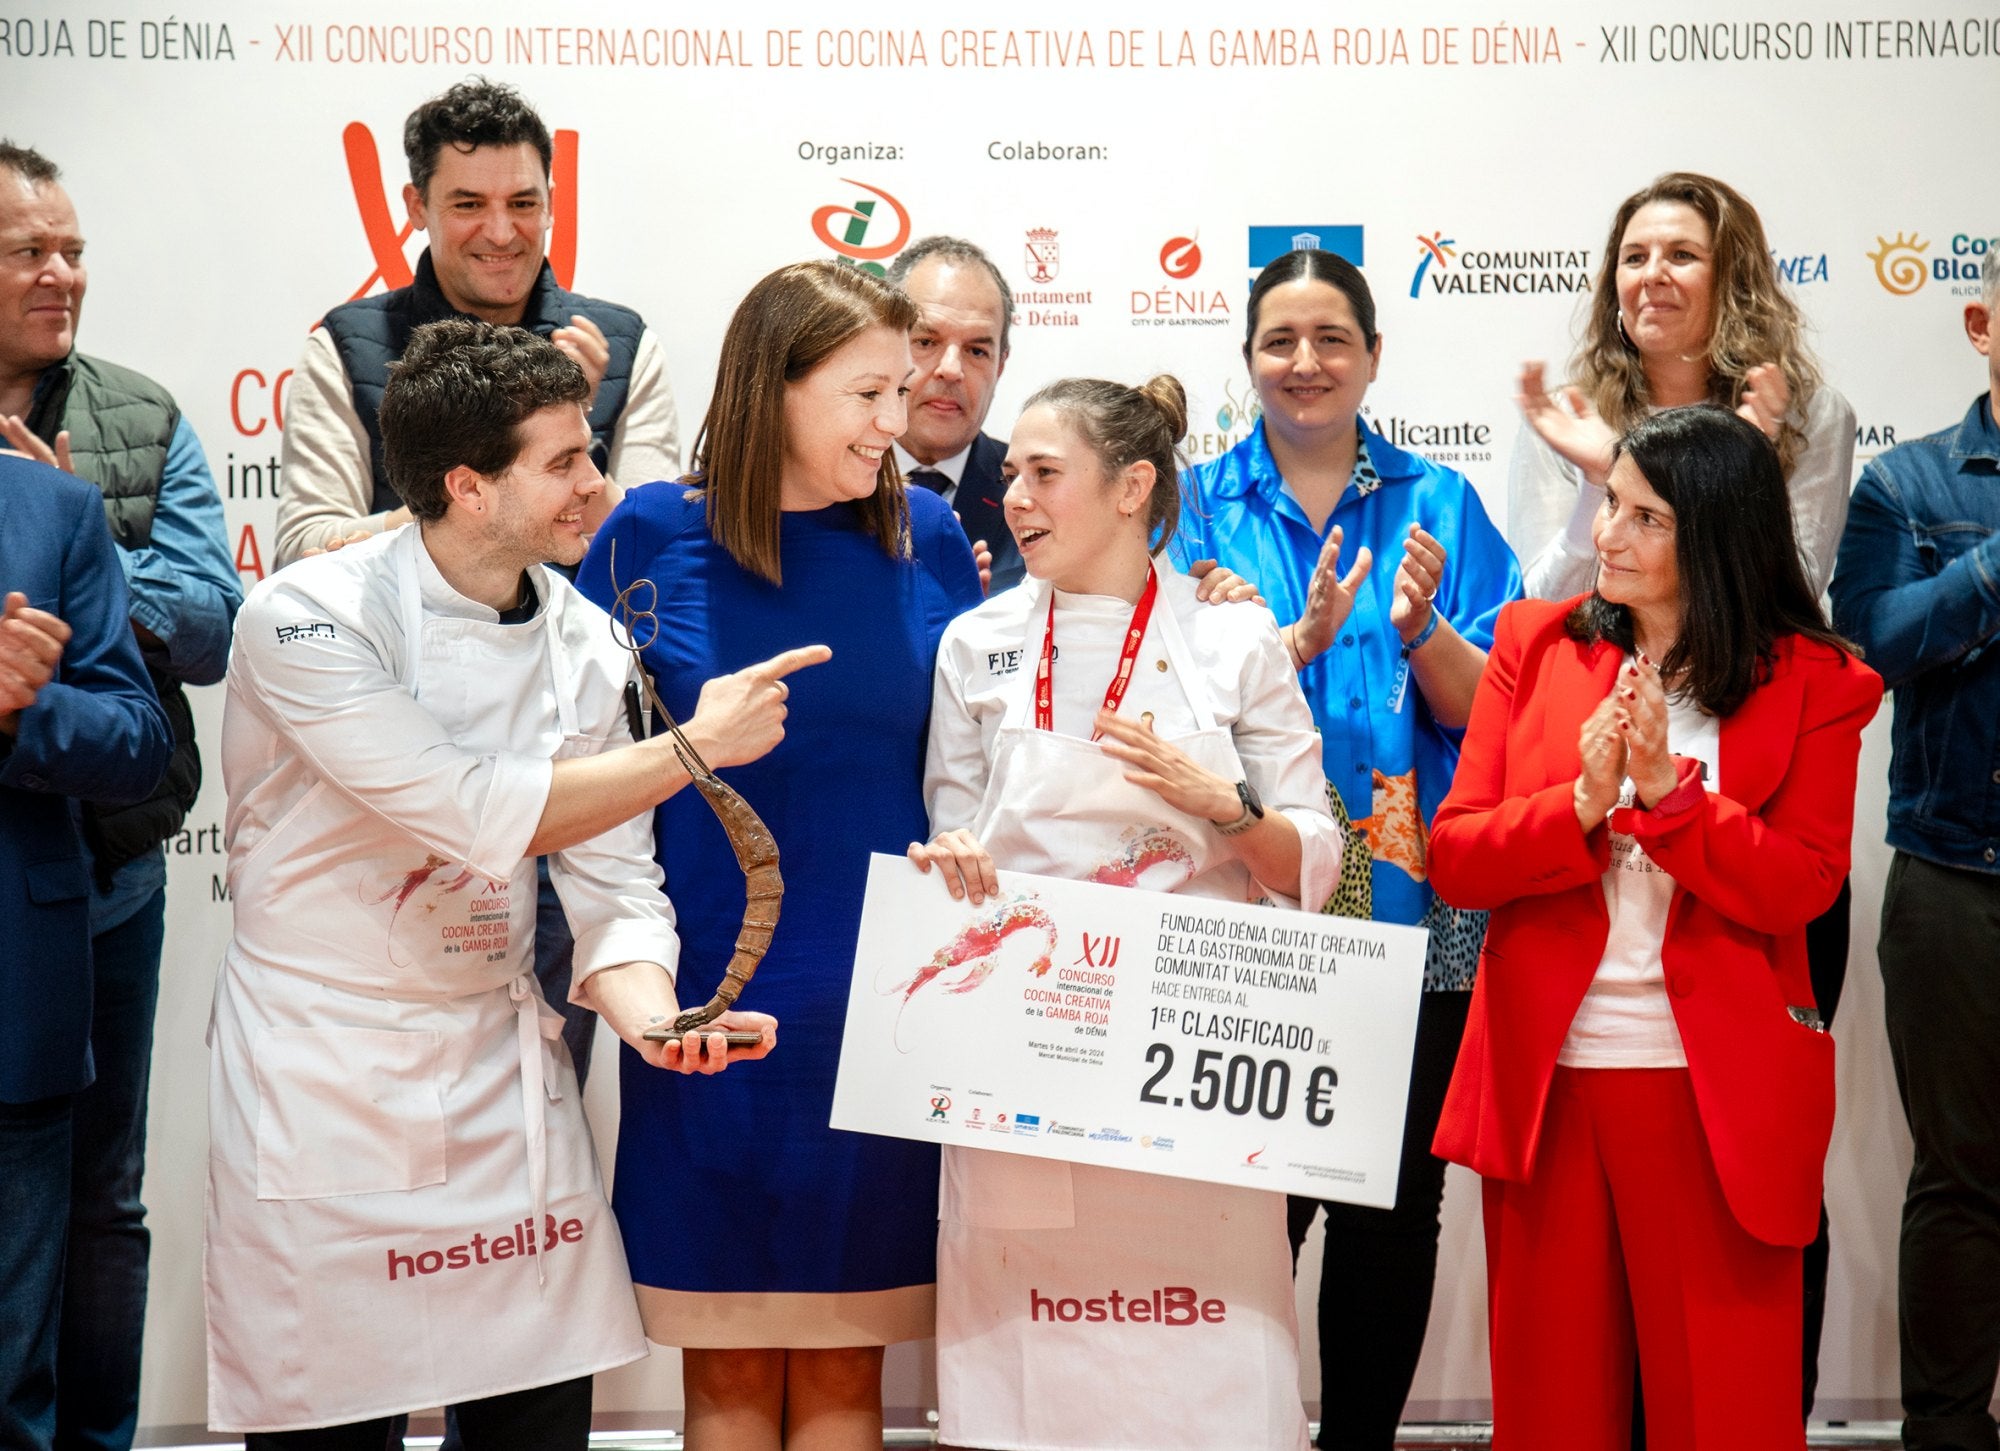 Cristina Gómez, ganadora del Concurso Internacional de gamba roja de Denia con su premio